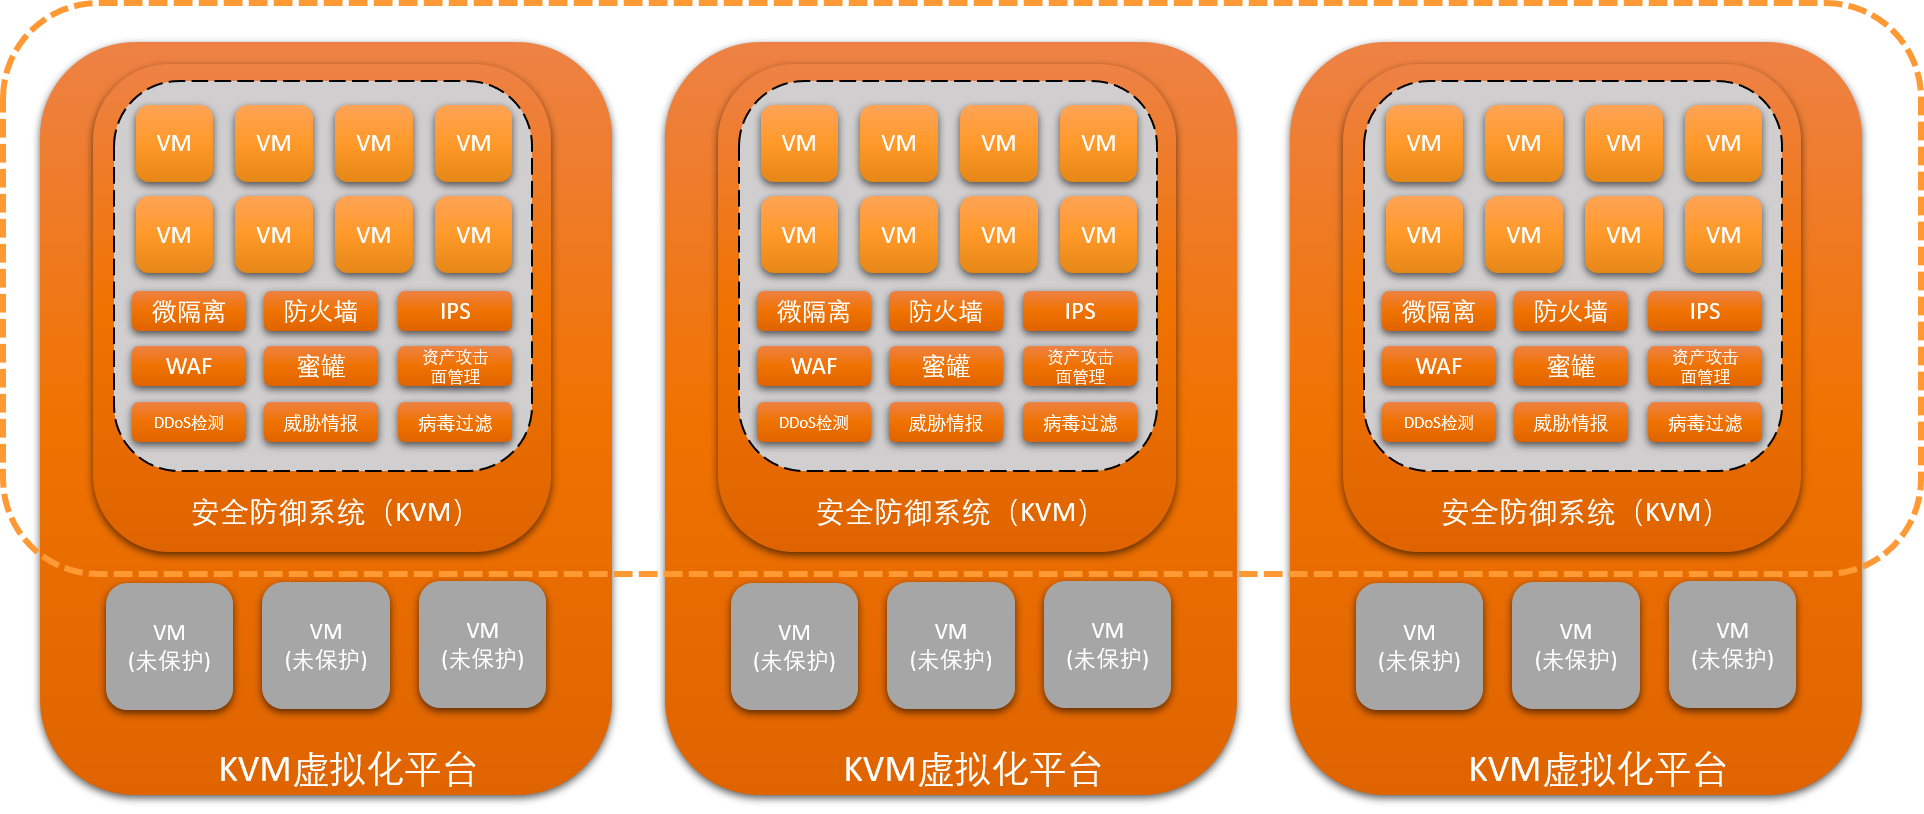 极元Oxtrea虚拟化嵌套助力KVM虚拟化实现网络安全